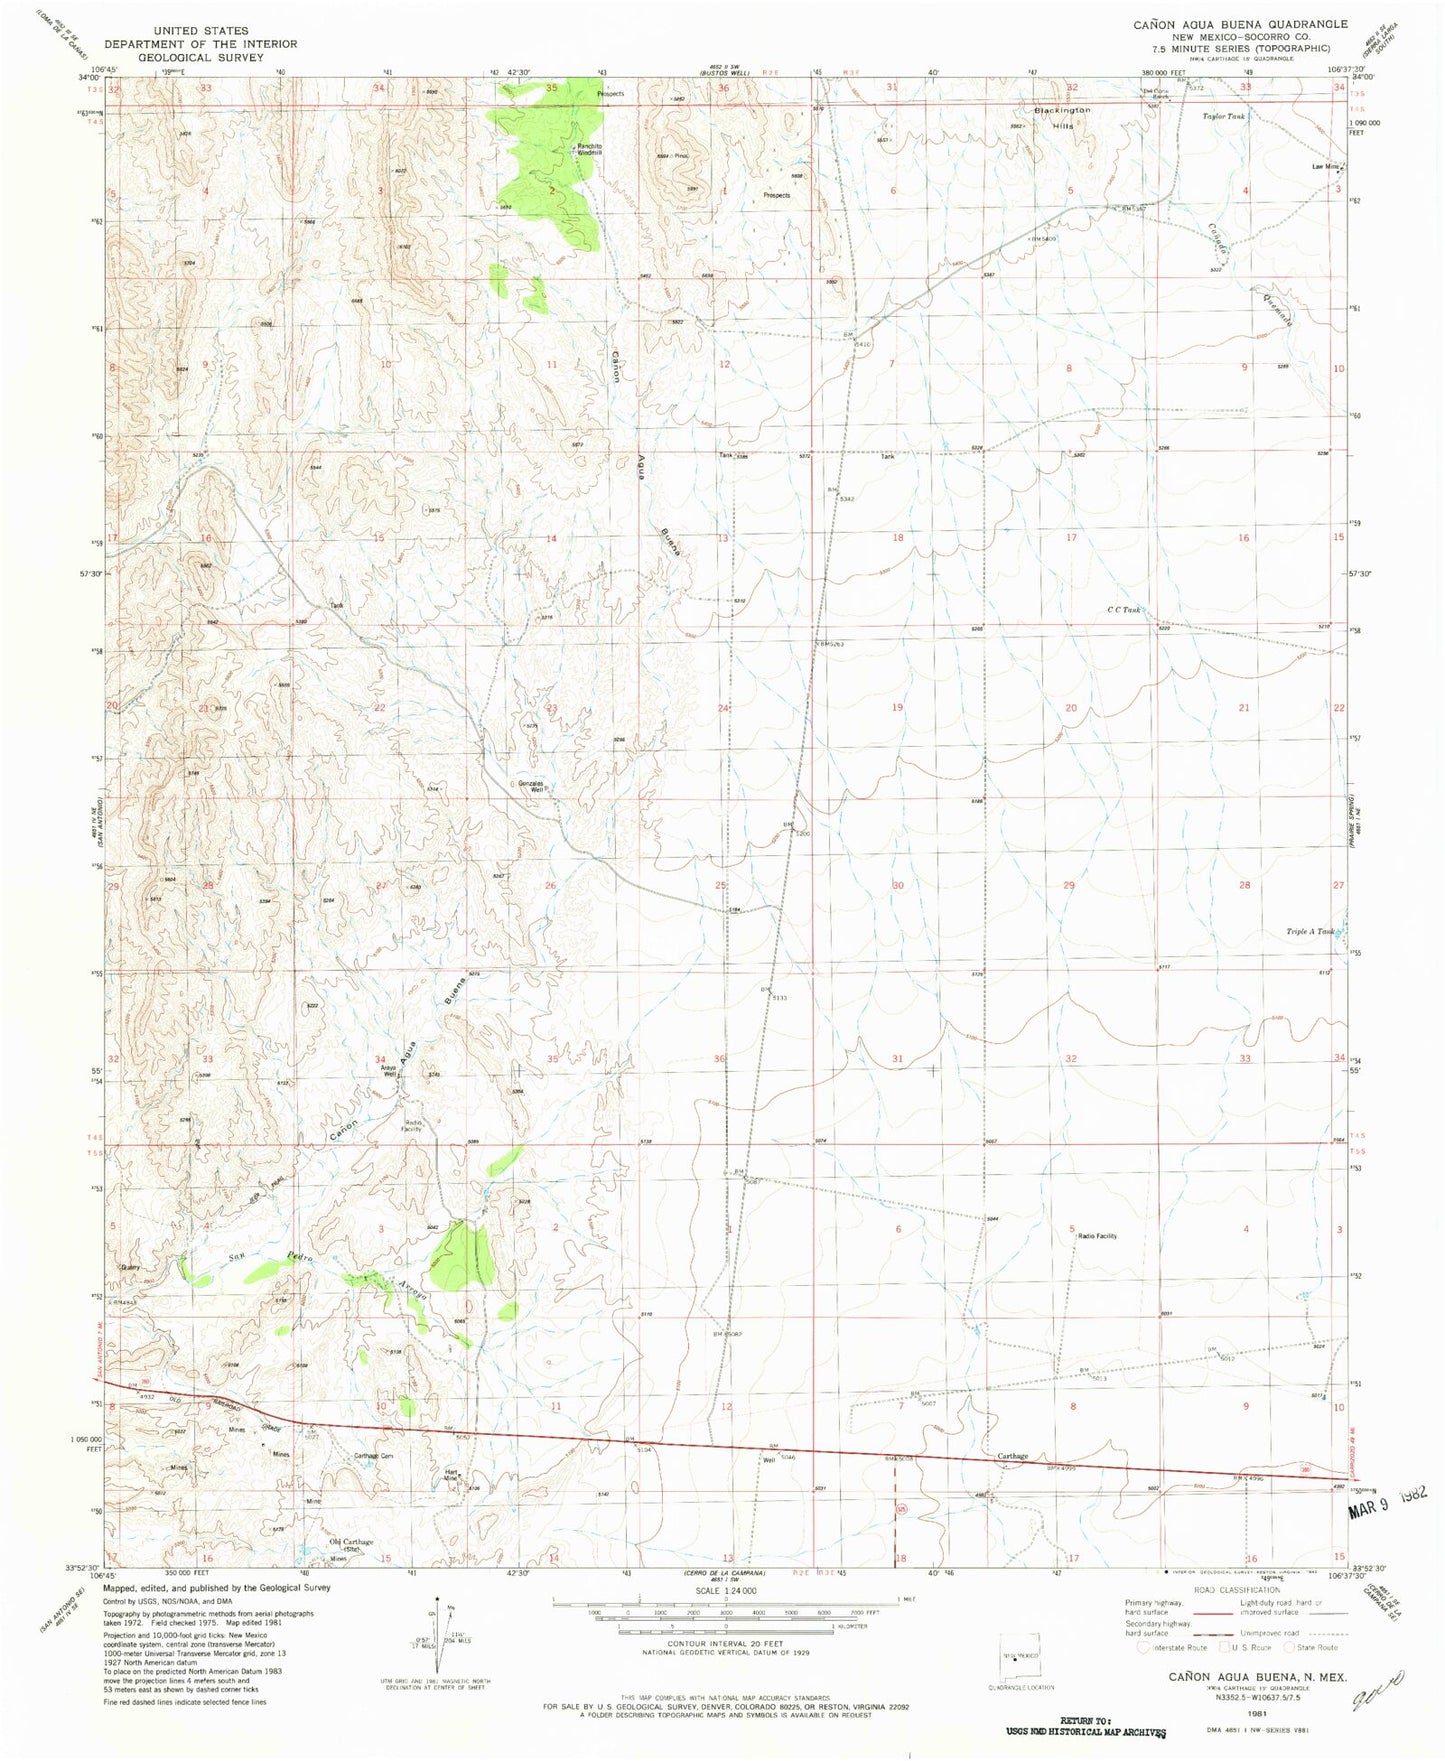 Classic USGS Canon Agua Buena New Mexico 7.5'x7.5' Topo Map Image